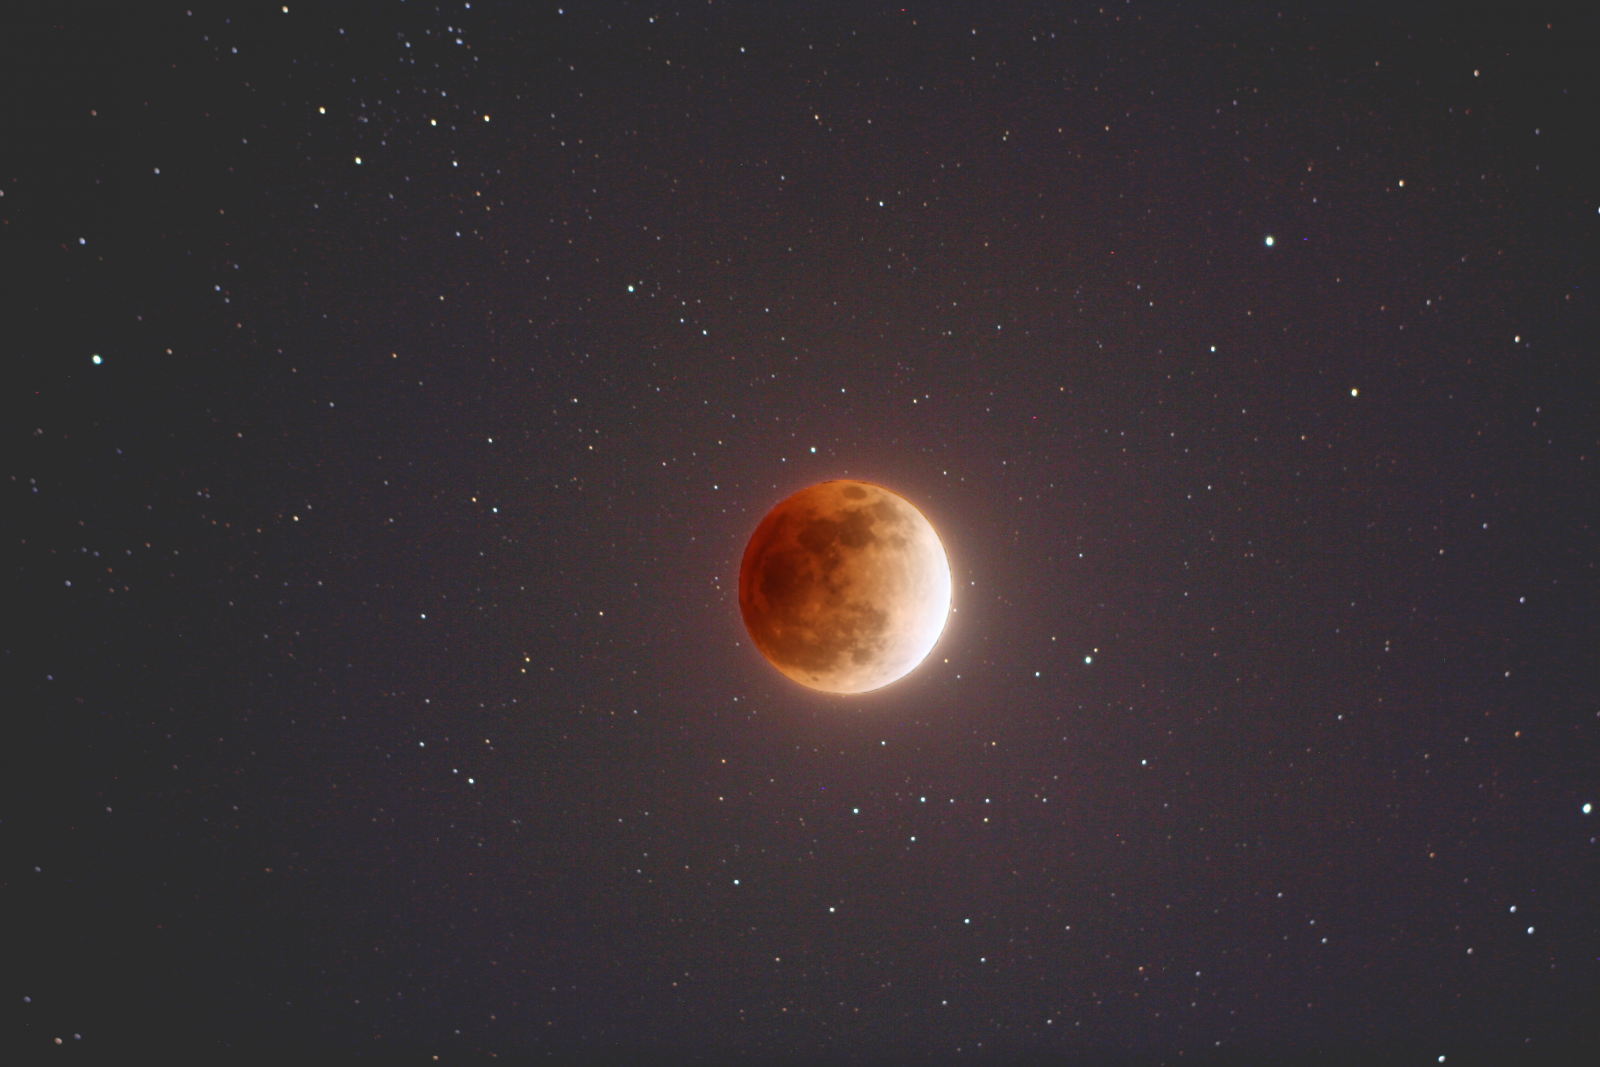 coloração avermelhada do fenômeno lhe rendeu o apelido de 'lua de sangue' (Foto: NASA)